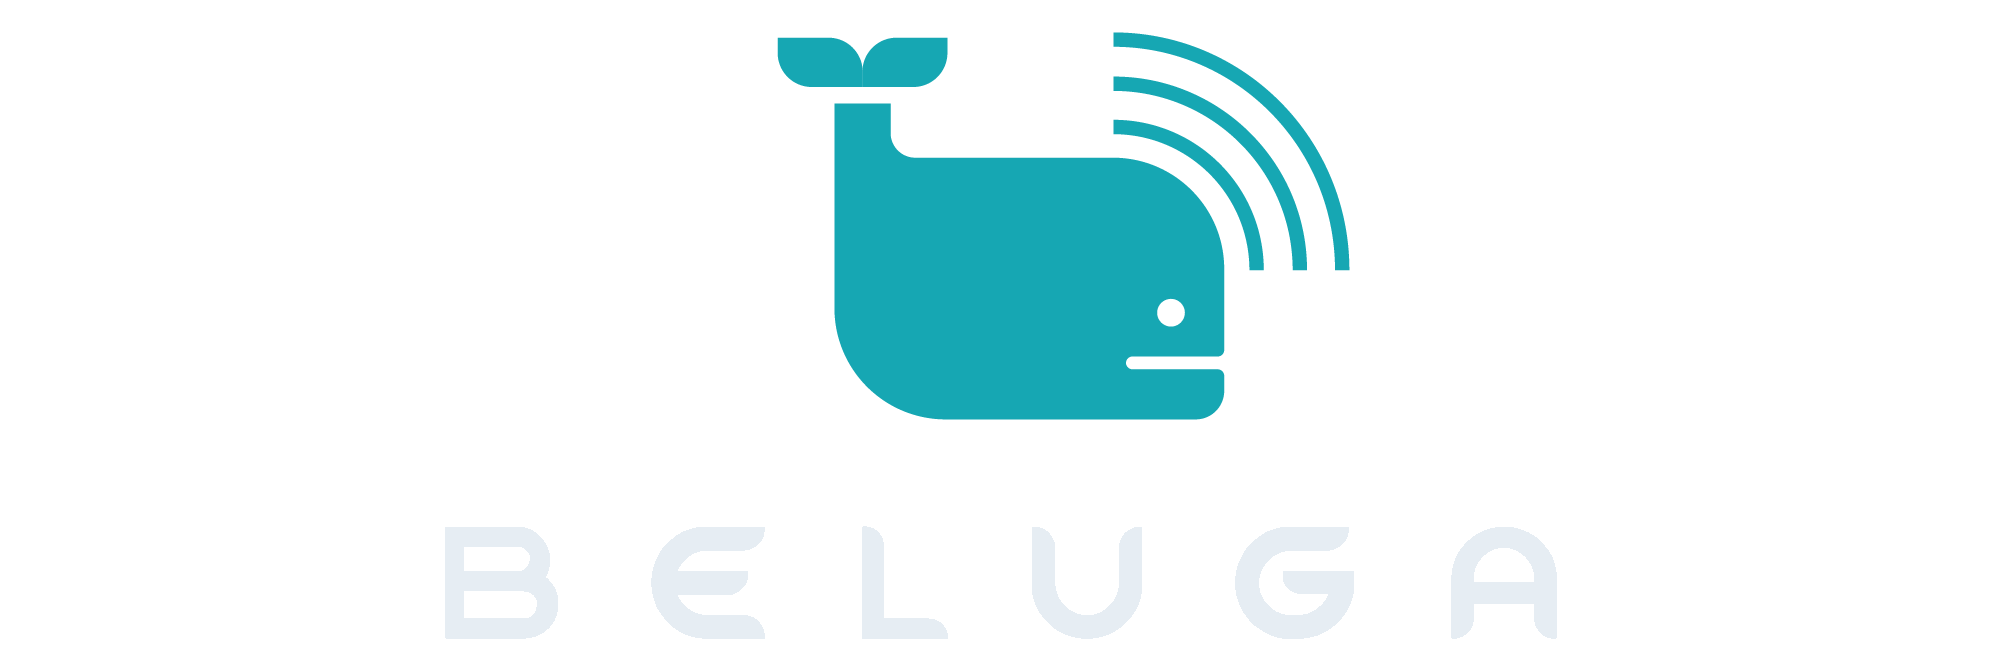 Shows Beluga logo.